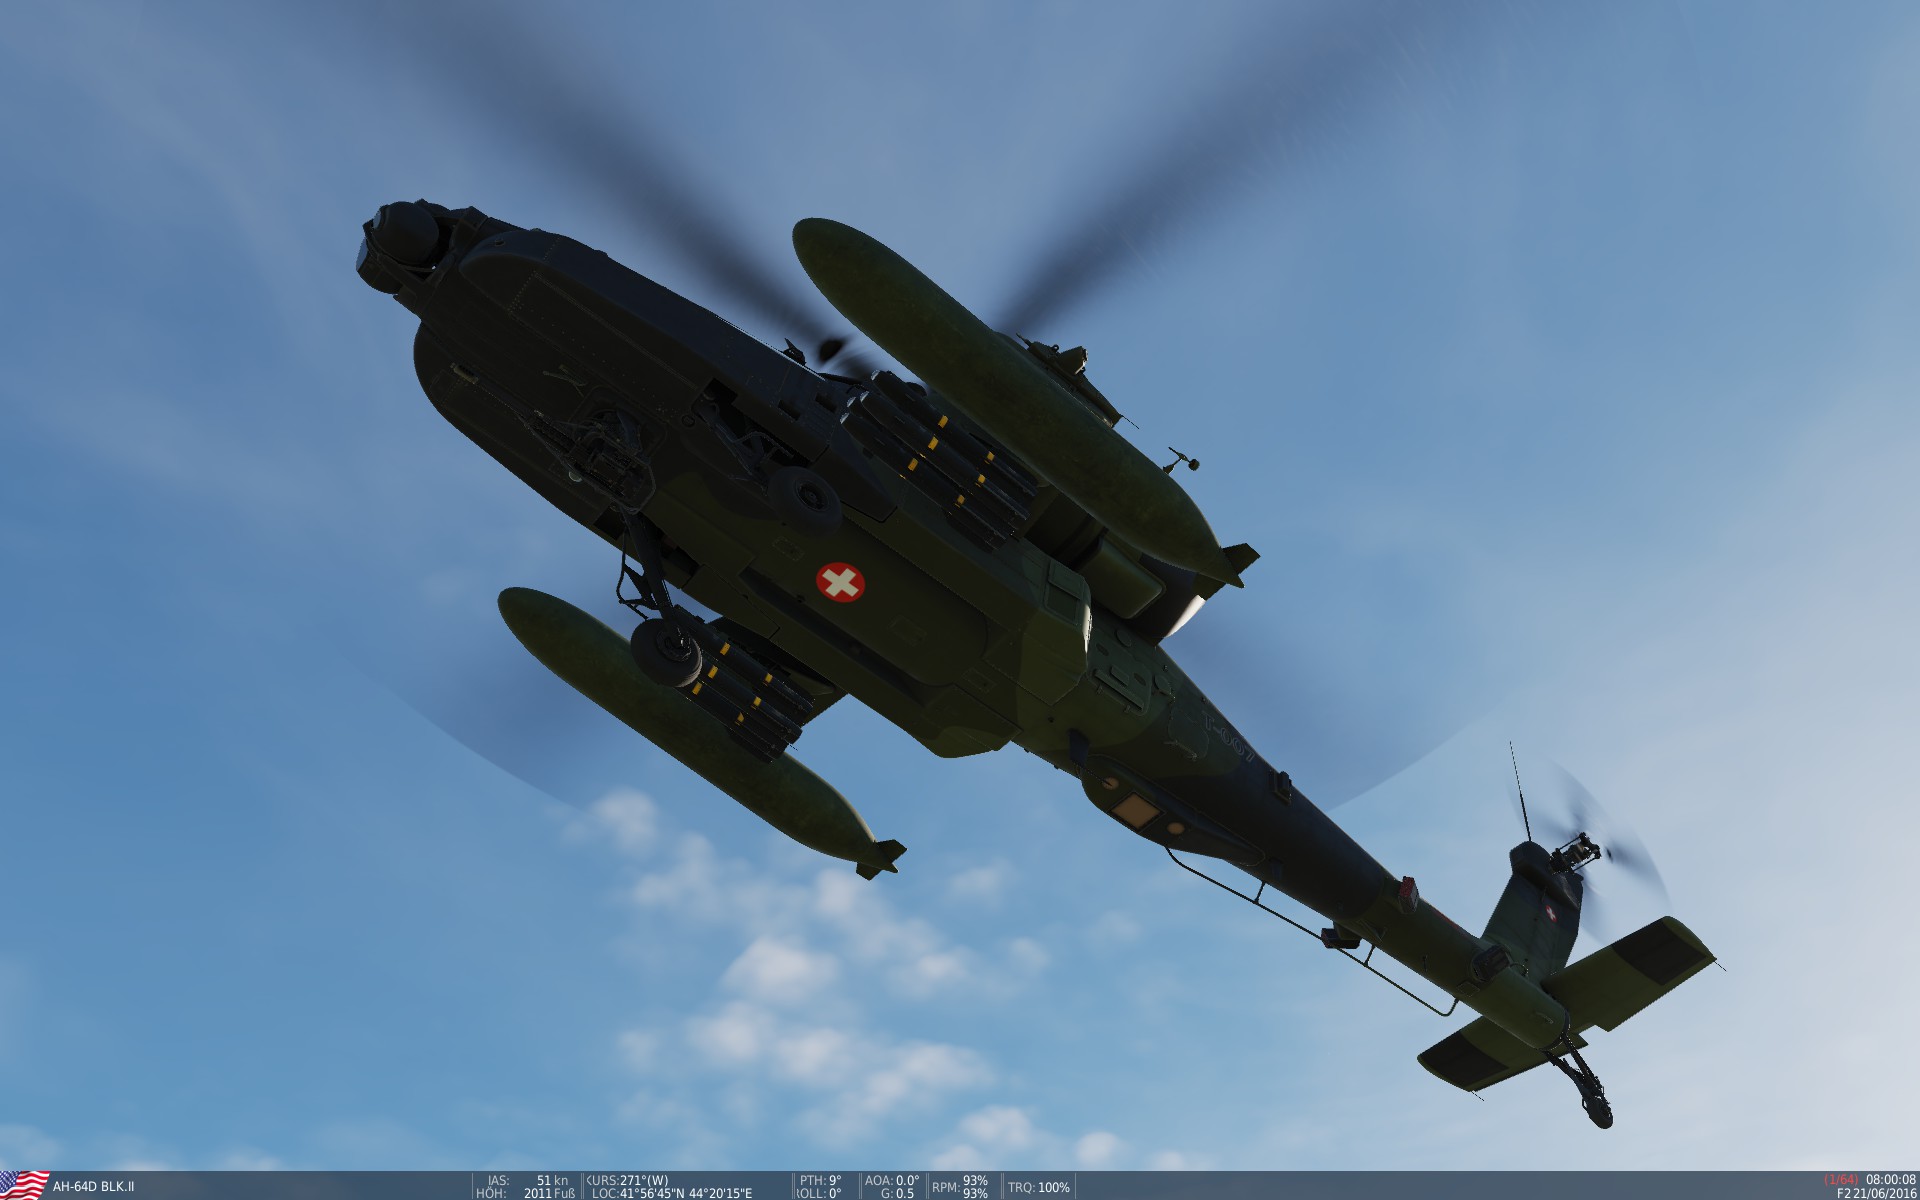 AH-64 Apache Swiss Air Force Wood / Schweizer Luftwaffe Wald (Fictional)